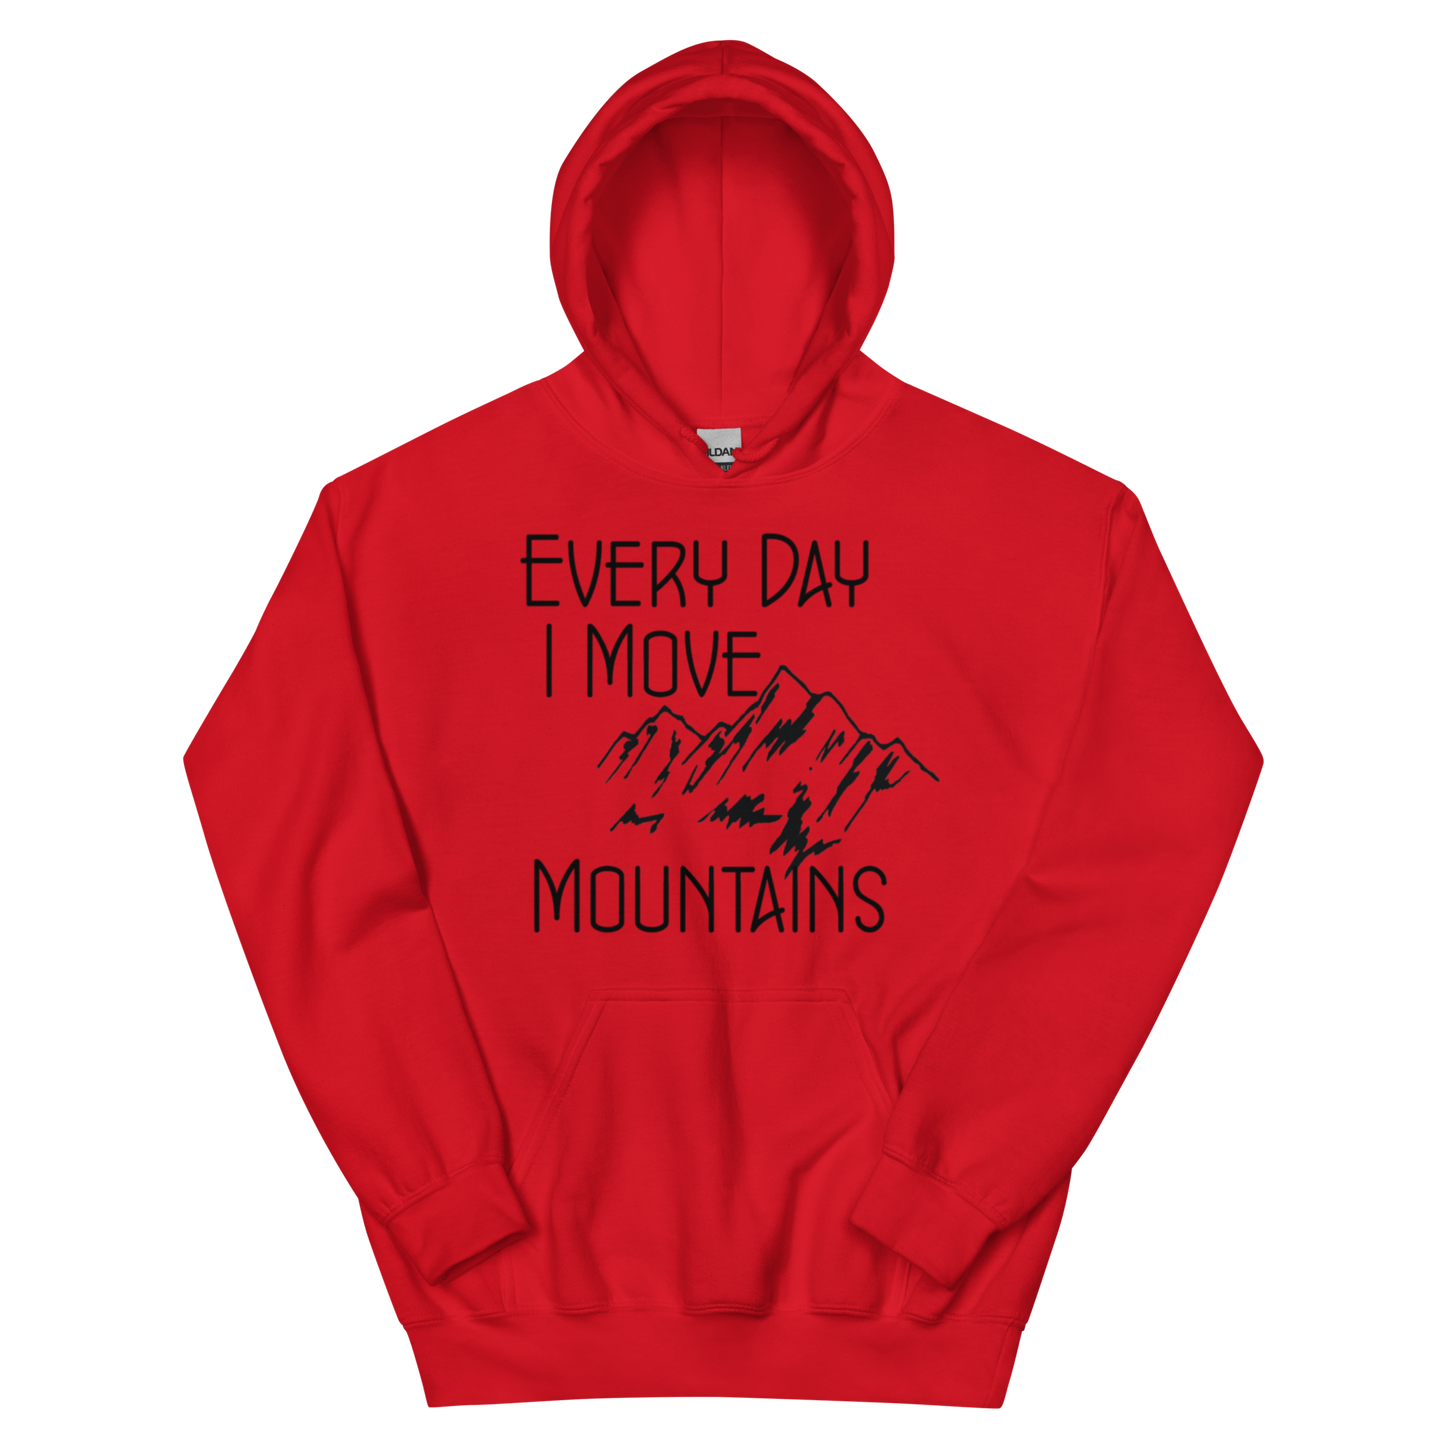 I move Mountains Hoodie